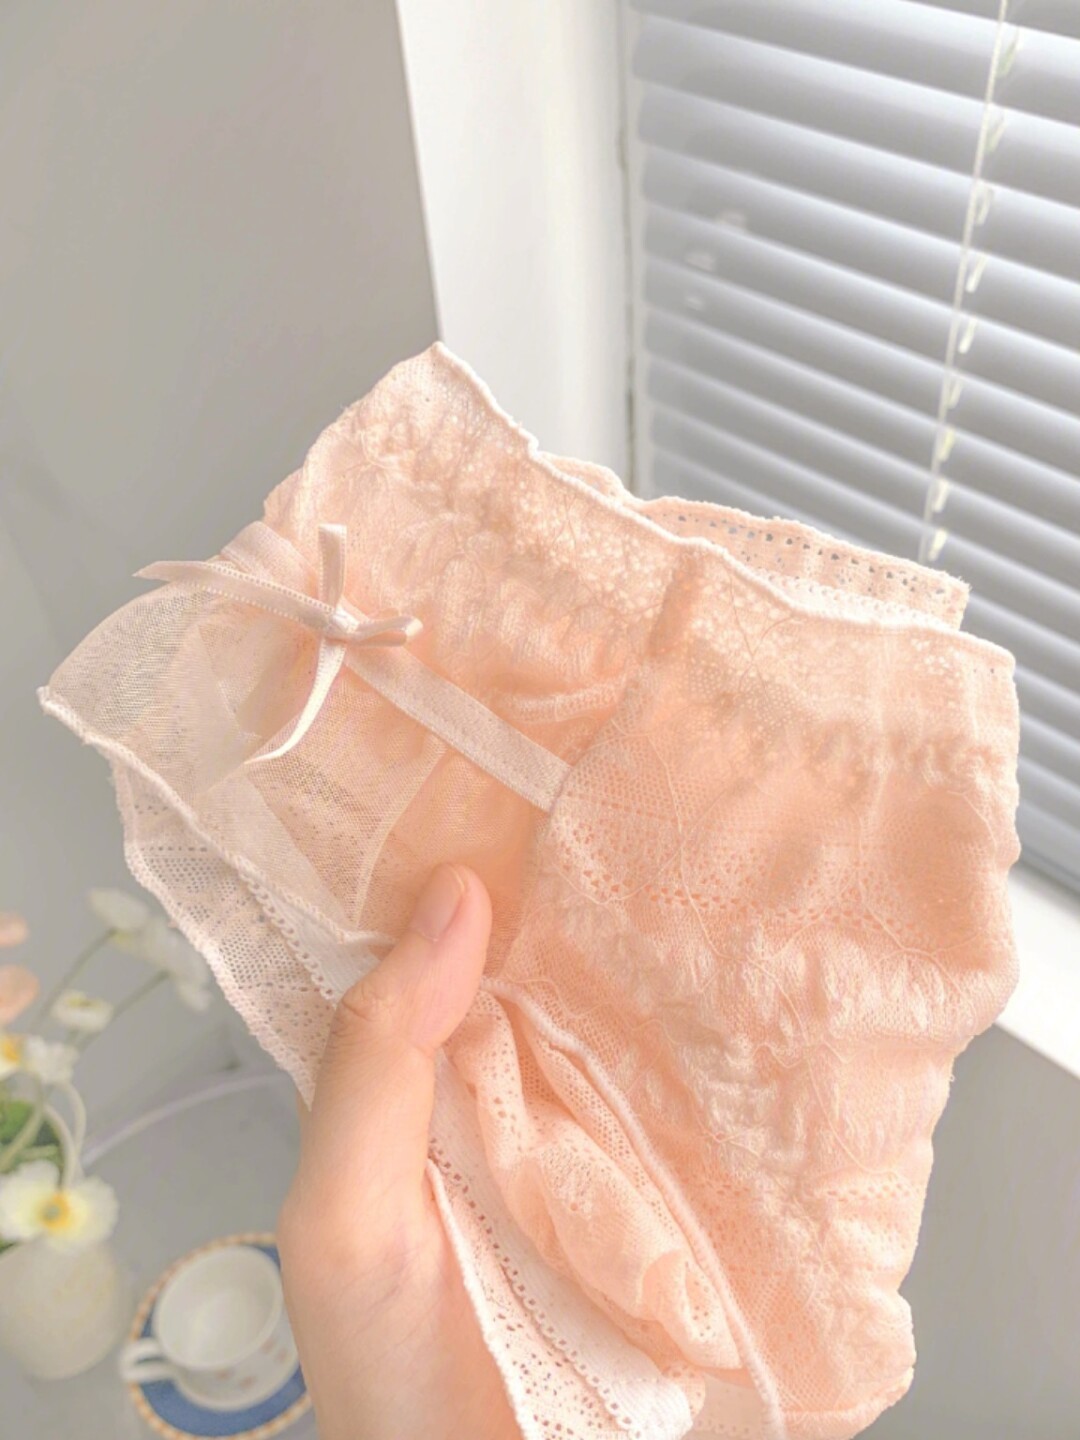 这粉粉嫩嫩的内裤只有甜妹能穿吧7108